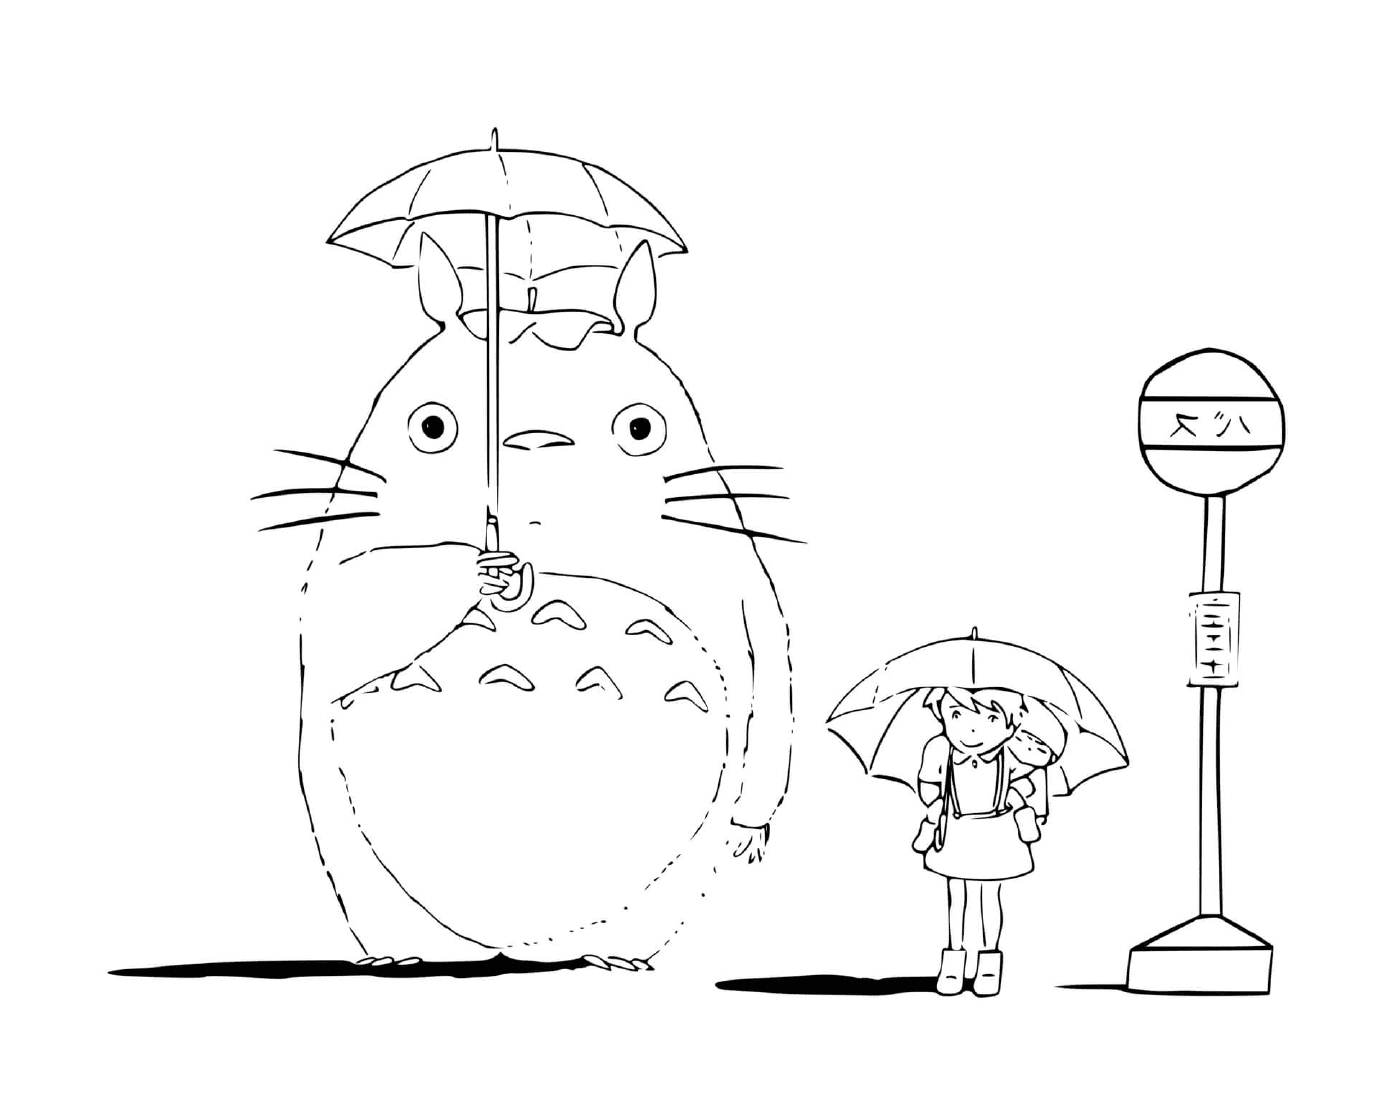  Totoro sosteniendo un paraguas 